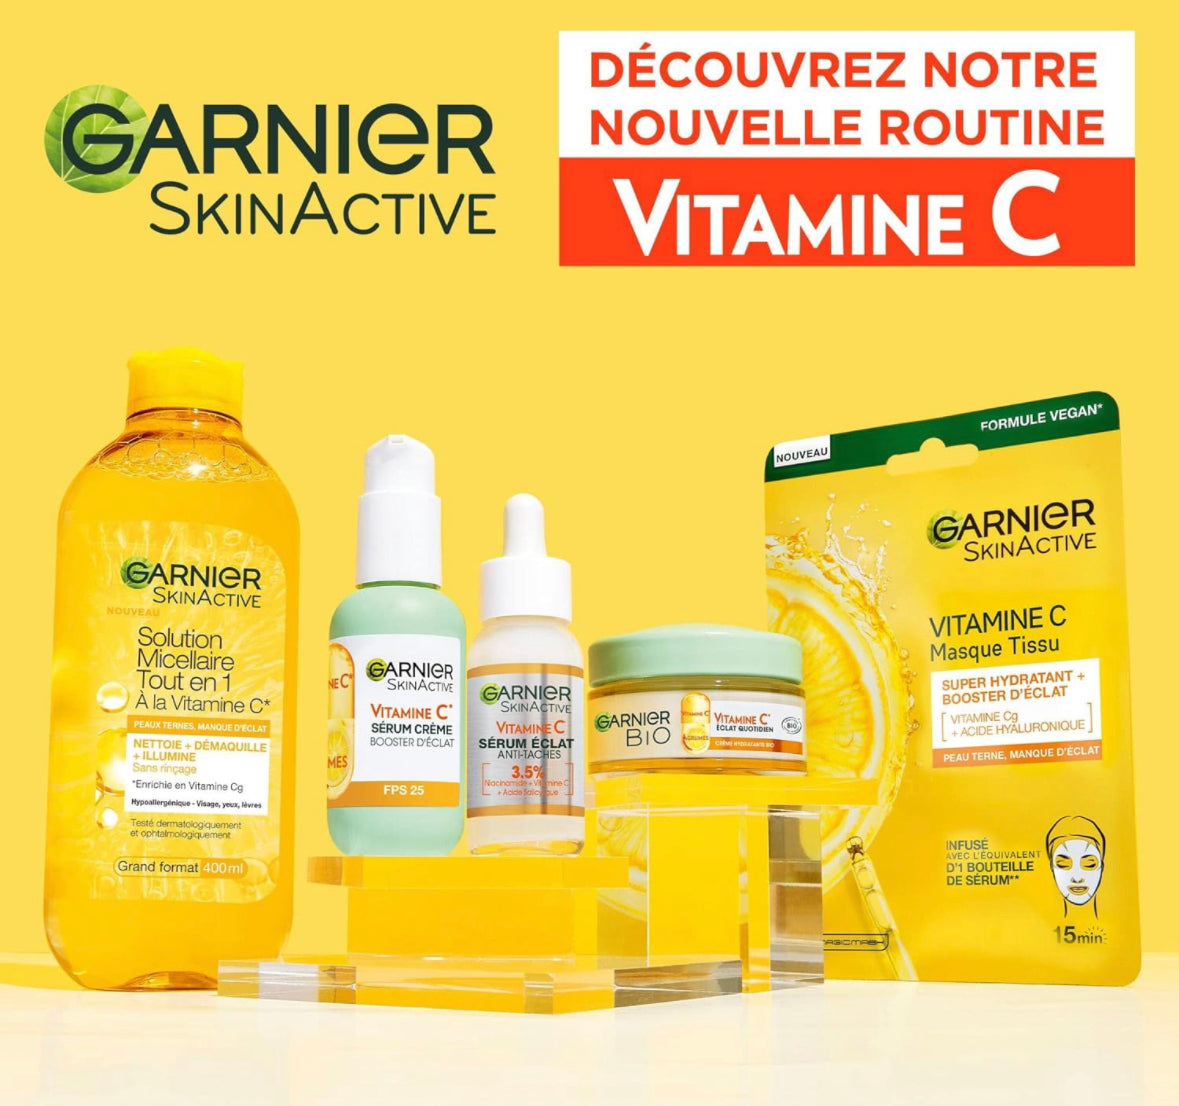 Garnier - Crème Hydratante Bio - Enrichi en Vitamine C et Agrumes 50 ml